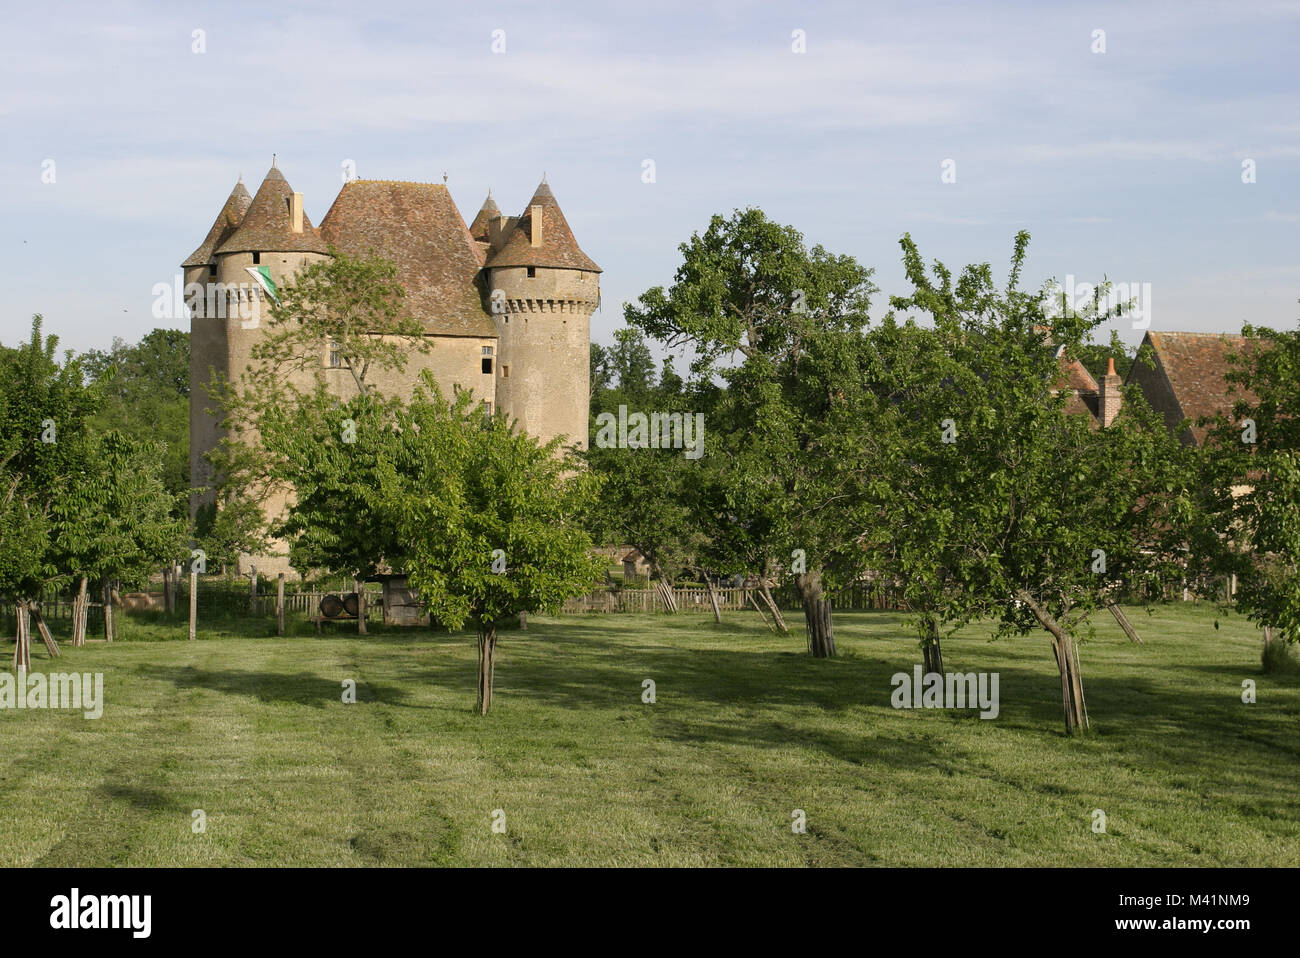 France, Indre, Berry, Région de George Sand (célèbre écrivain français), Sarzay, château féodal du 14ème siècle Banque D'Images